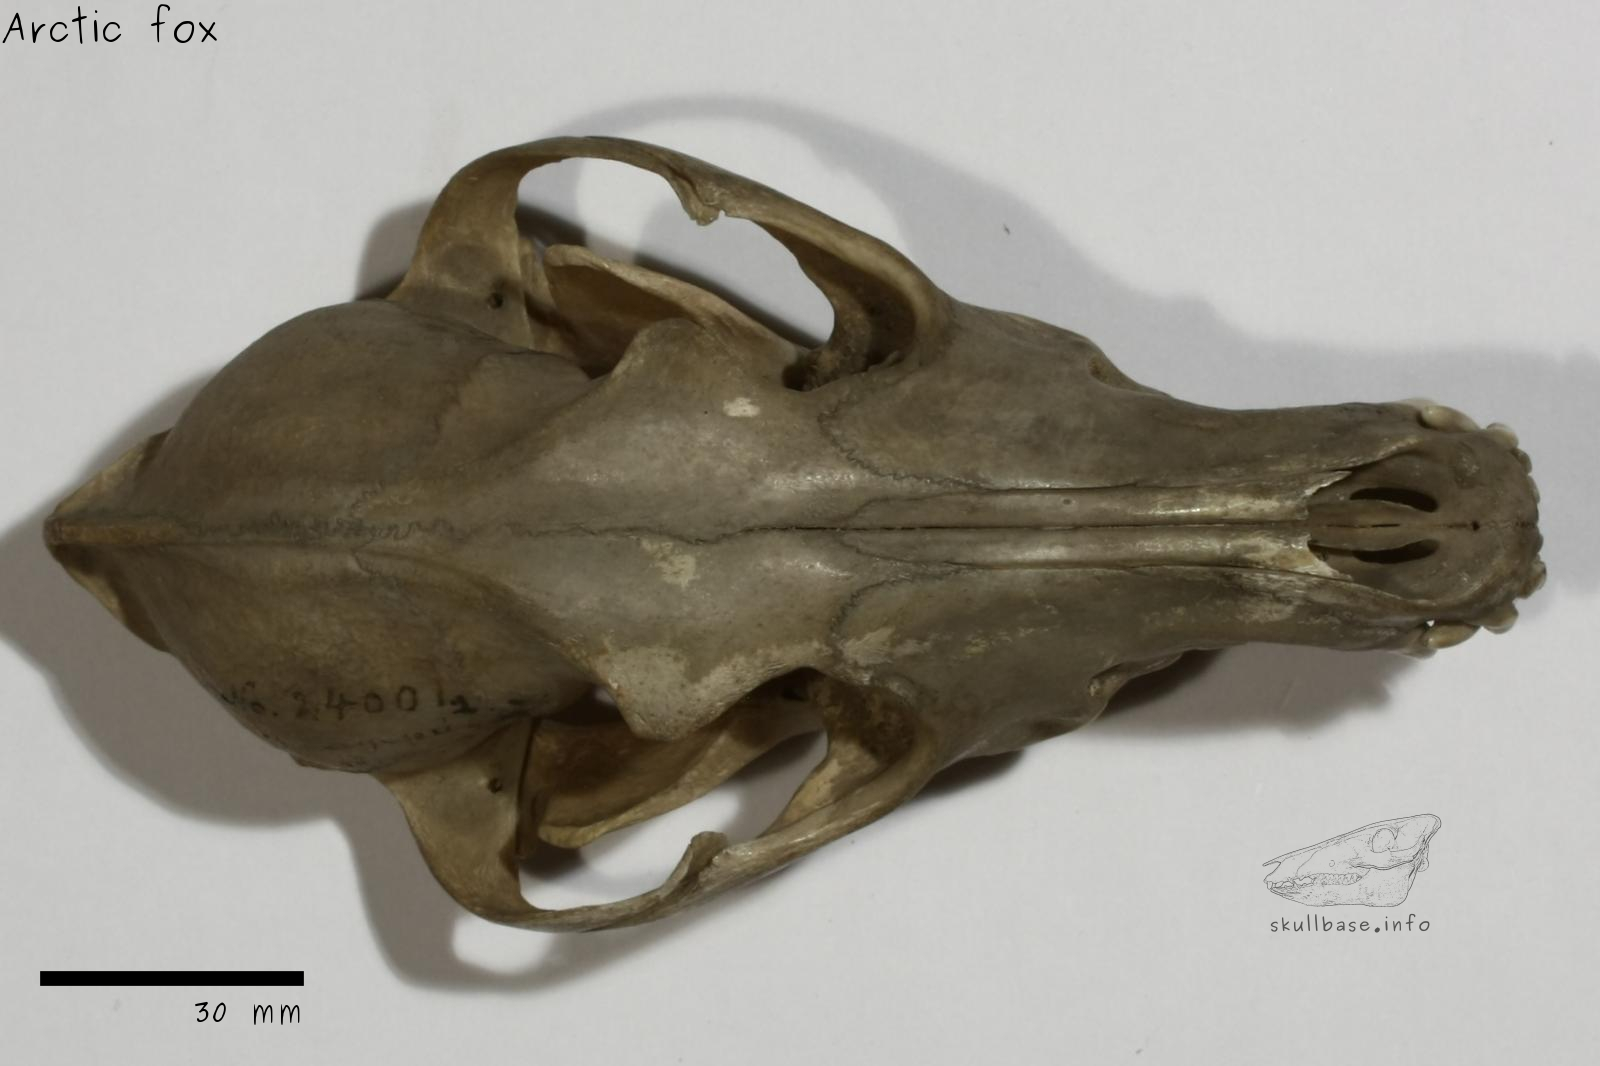 Arctic fox (Vulpes lagopus) skull dorsal view